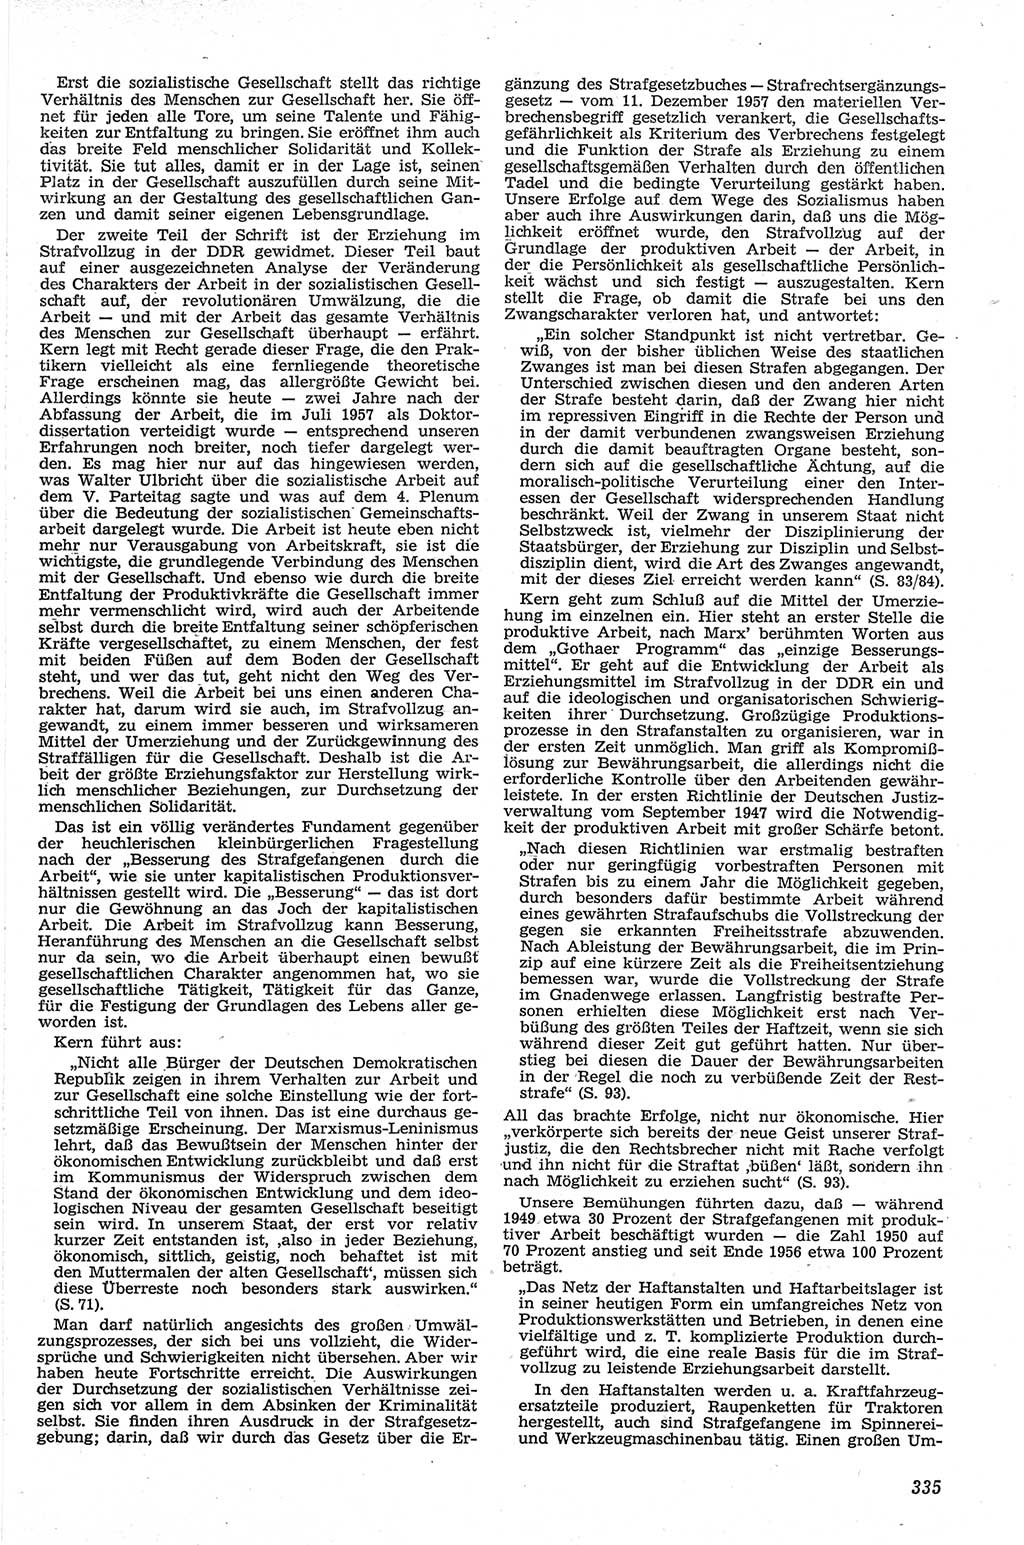 Neue Justiz (NJ), Zeitschrift für Recht und Rechtswissenschaft [Deutsche Demokratische Republik (DDR)], 13. Jahrgang 1959, Seite 335 (NJ DDR 1959, S. 335)